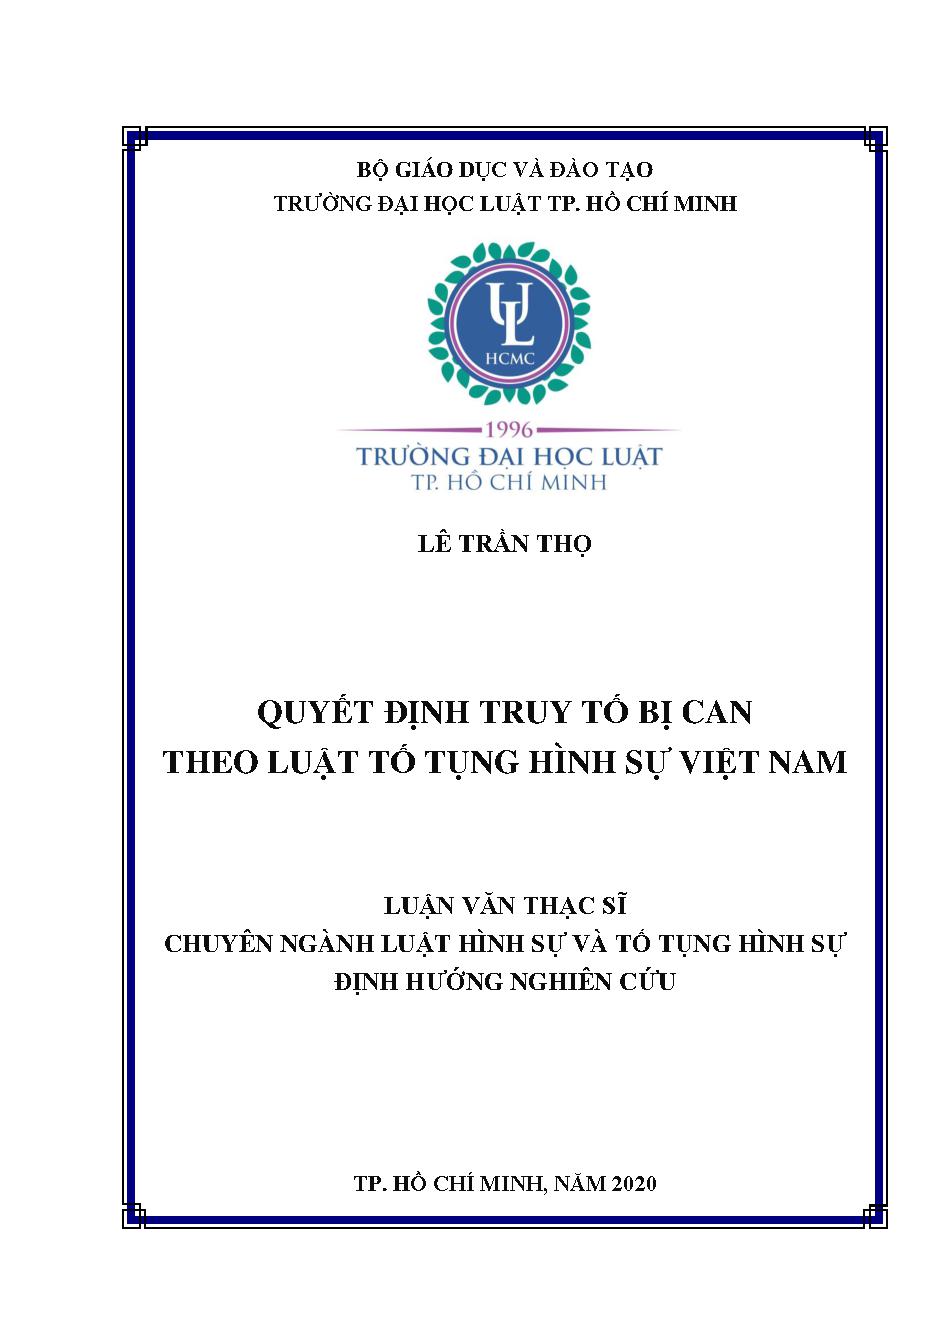 Quyết định truy tố bị can theo luật Tố tụng hình sự Việt Nam